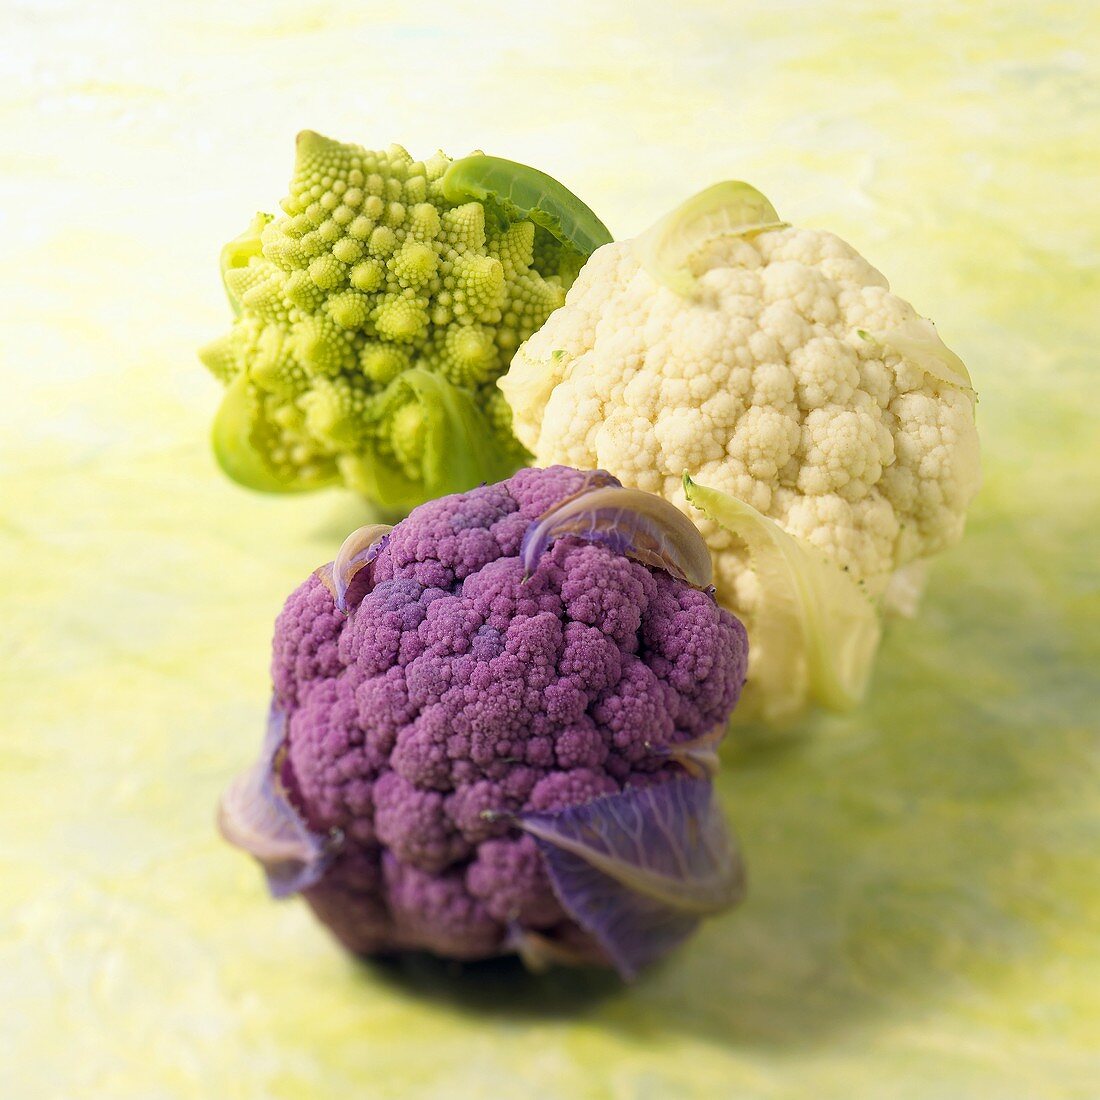 Purple and White Cauliflowers and Romanesco Cauliflower